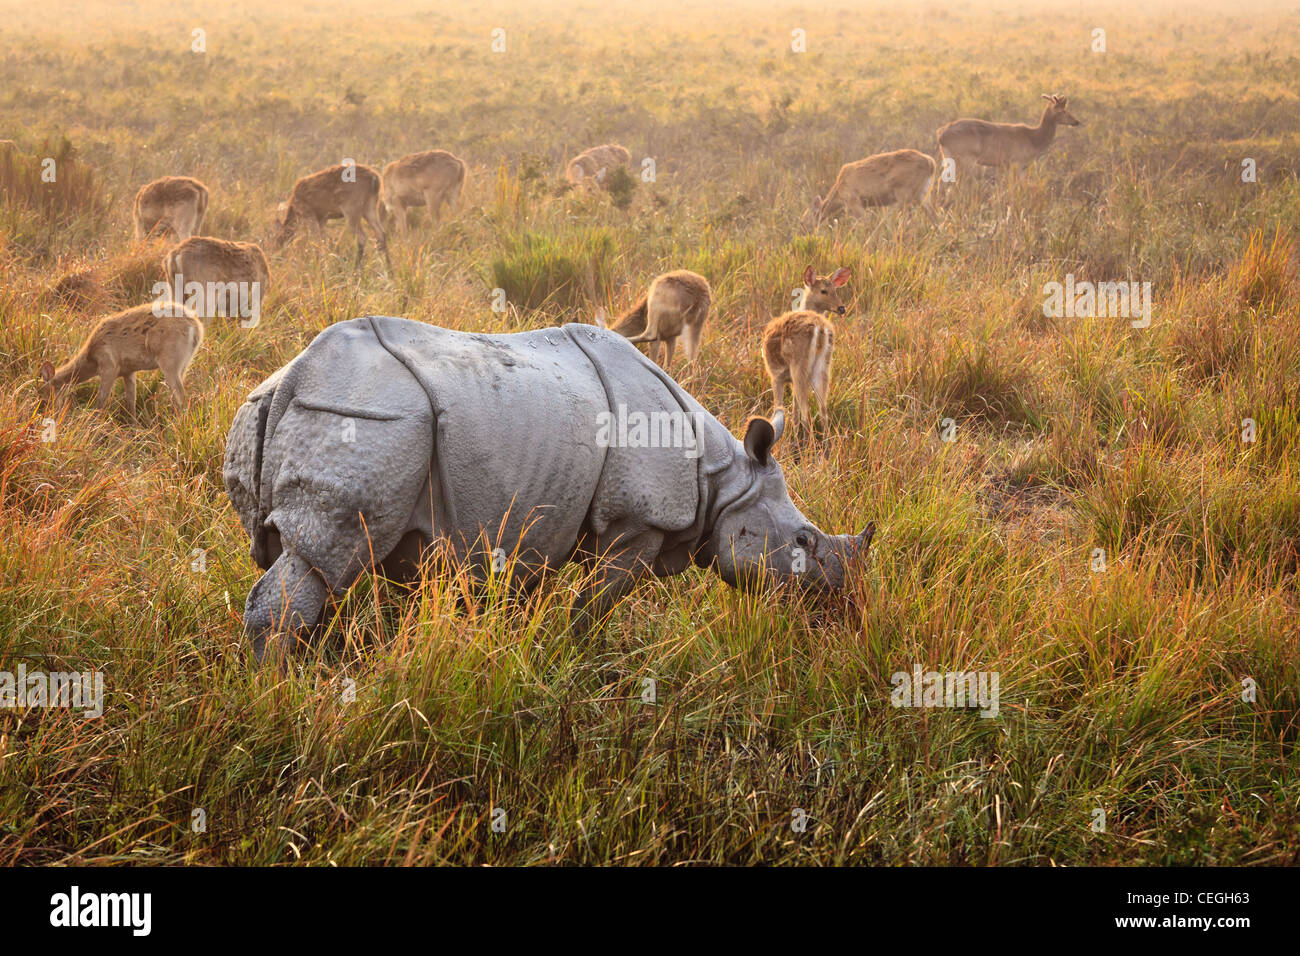 Un rhinocéros indien en face d'un groupe de cerfs de porc Parc national de Kaziranga, Assam, Inde Banque D'Images